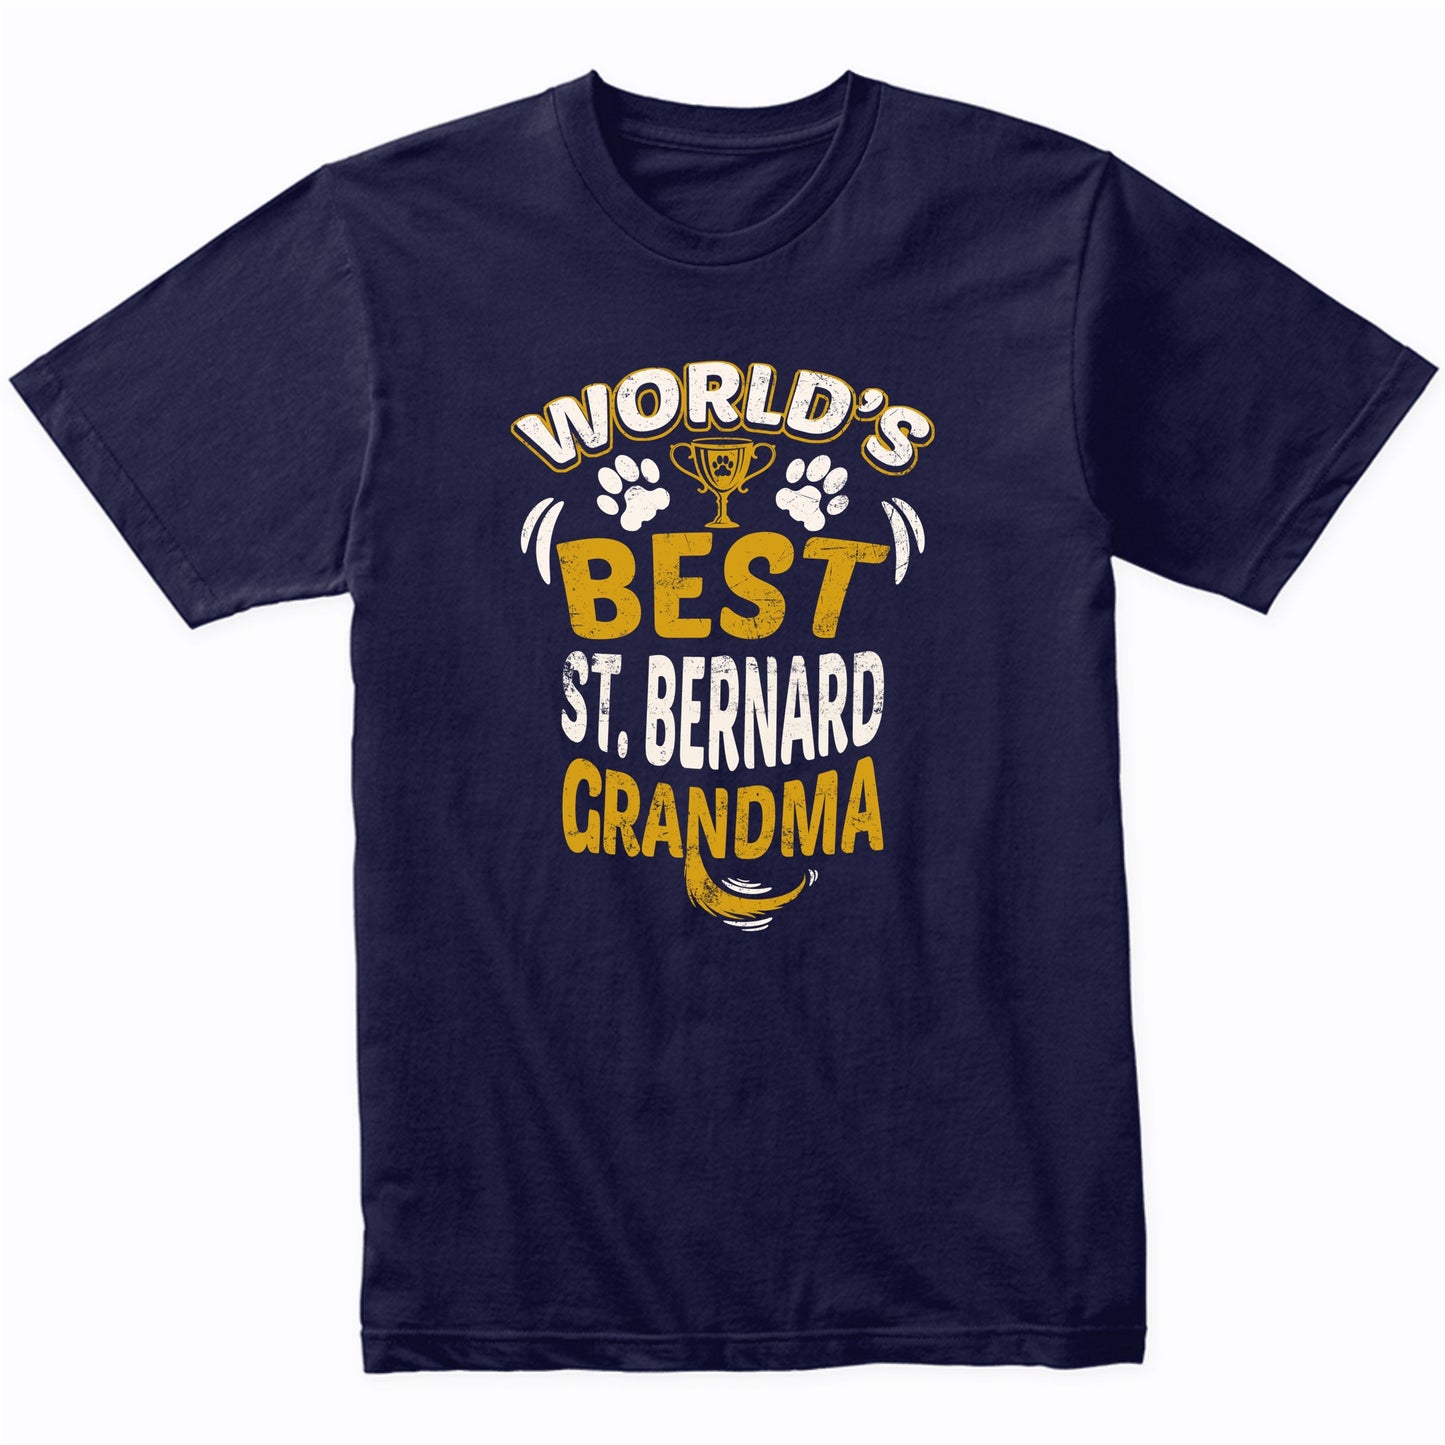 World's Best St. Bernard Grandma Graphic T-Shirt